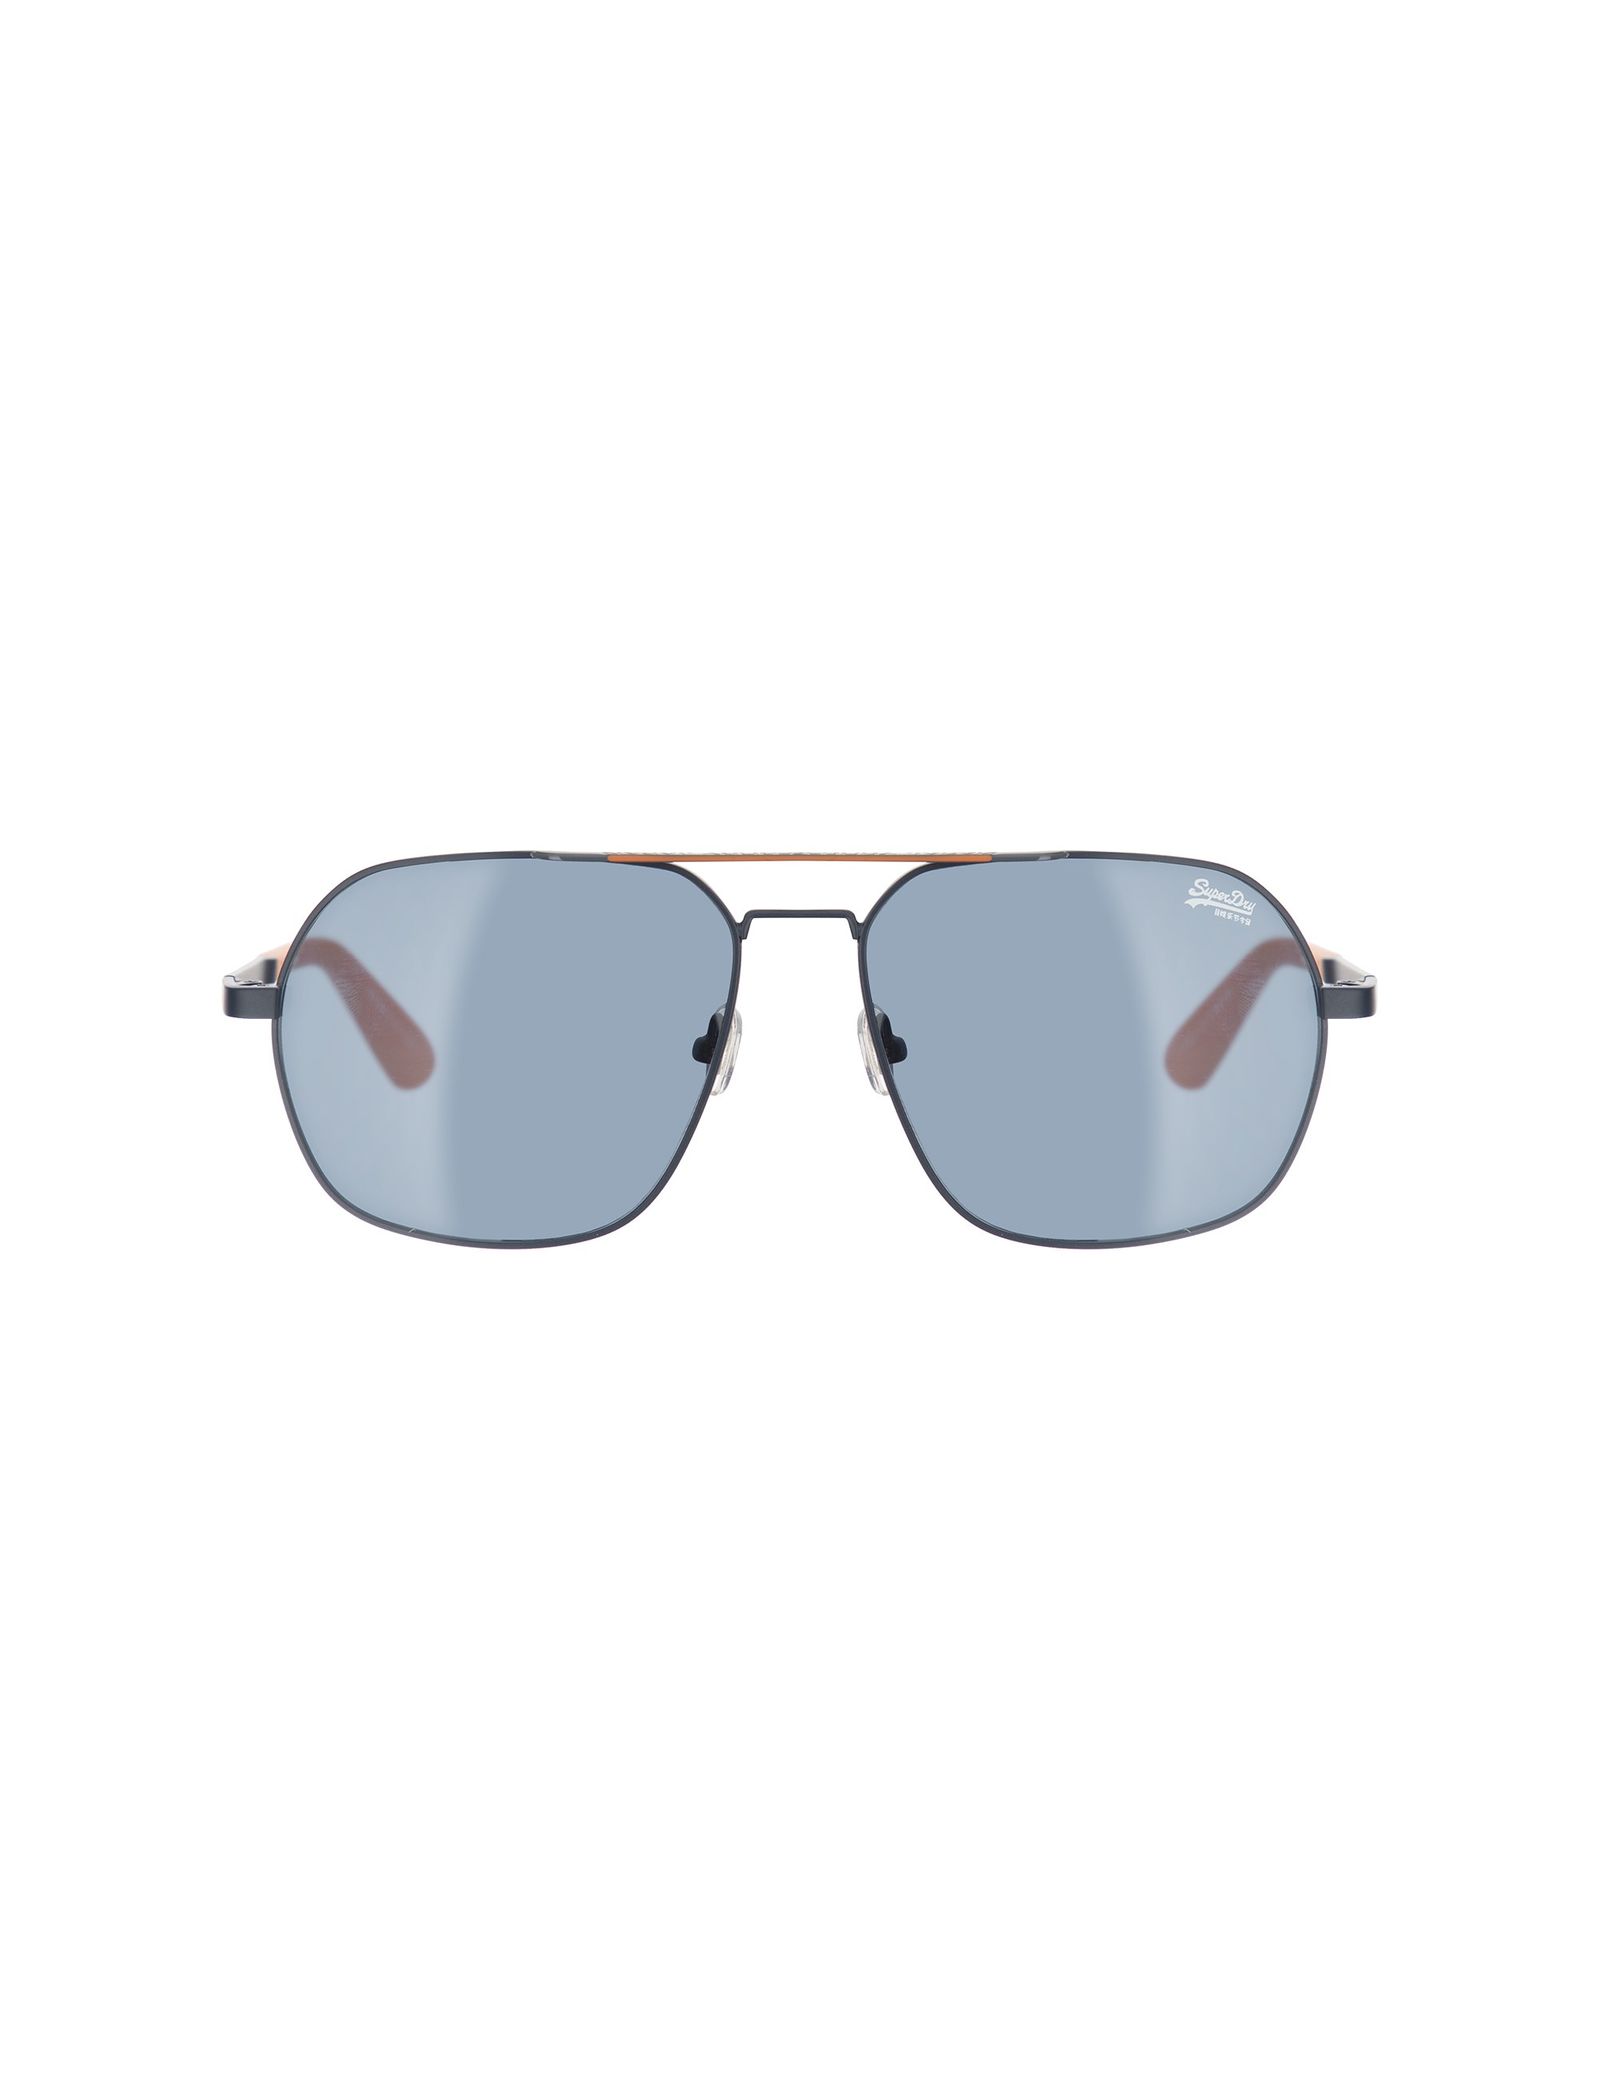 عینک آفتابی خلبانی مردانه - سوپردرای - سرمه اي - 1